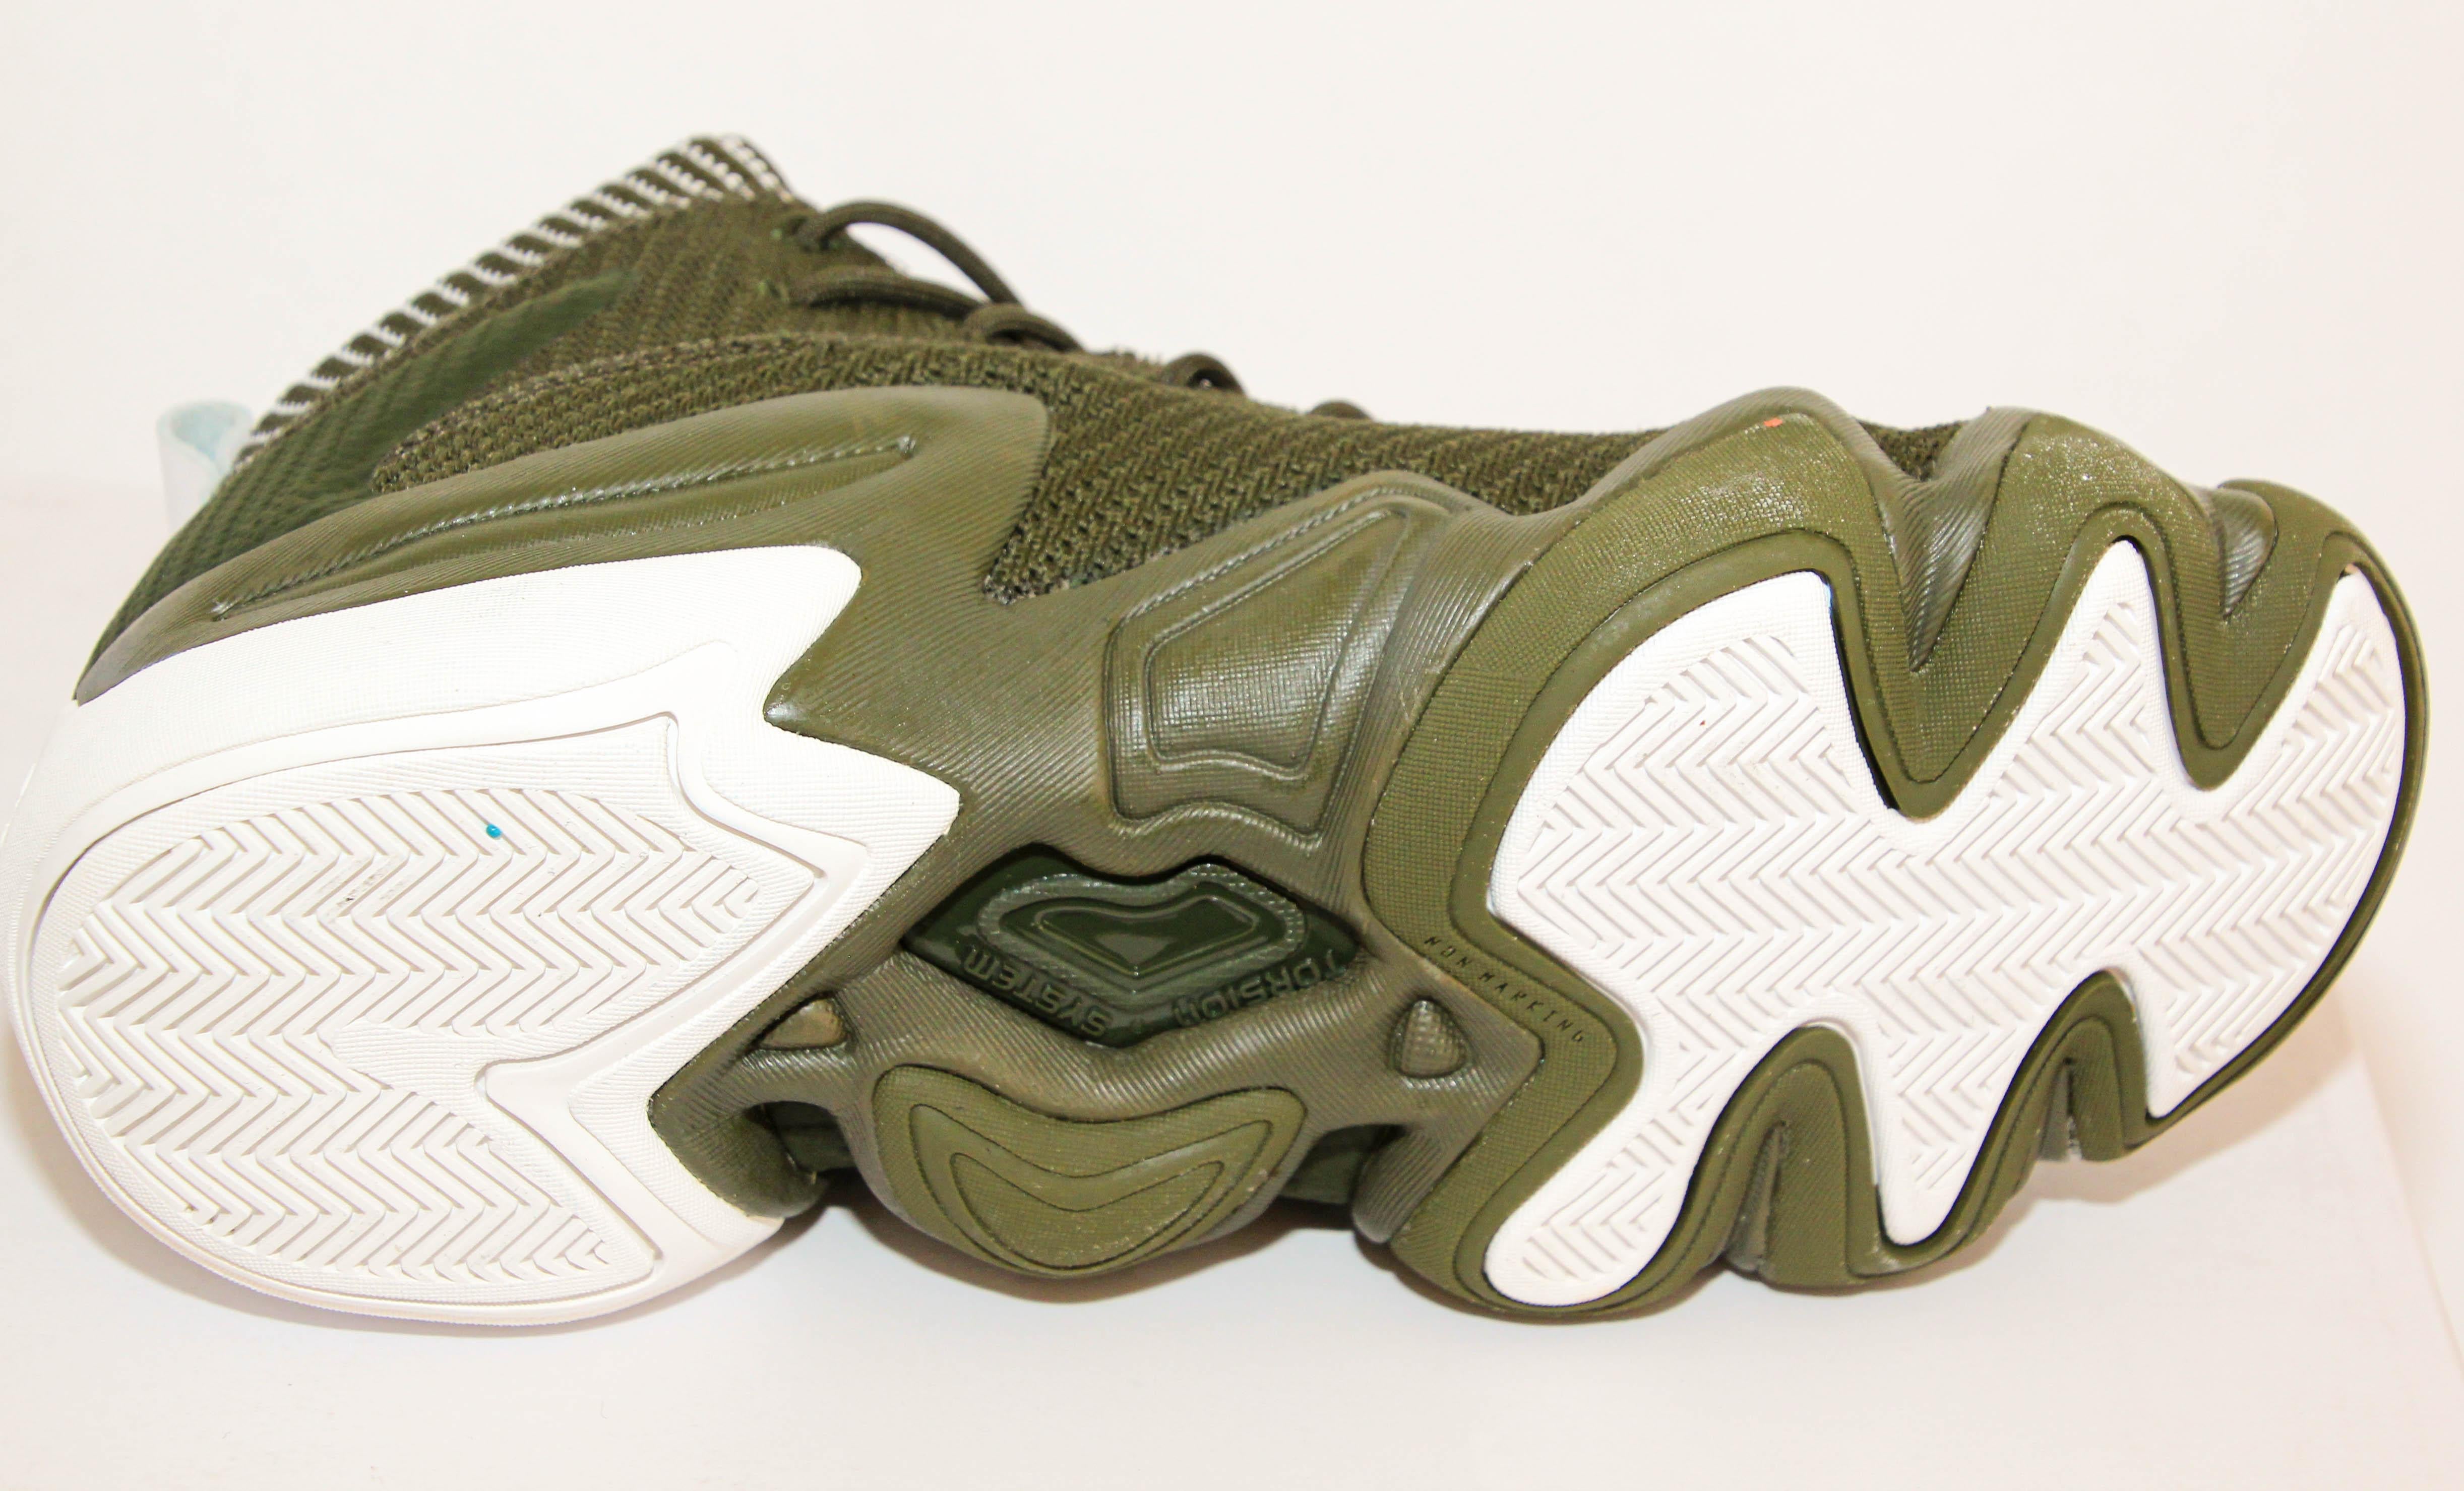 Adidas Crazy 8 Adv 1997 Basketball Shoes Size US 9 EU 42 For Sale 1